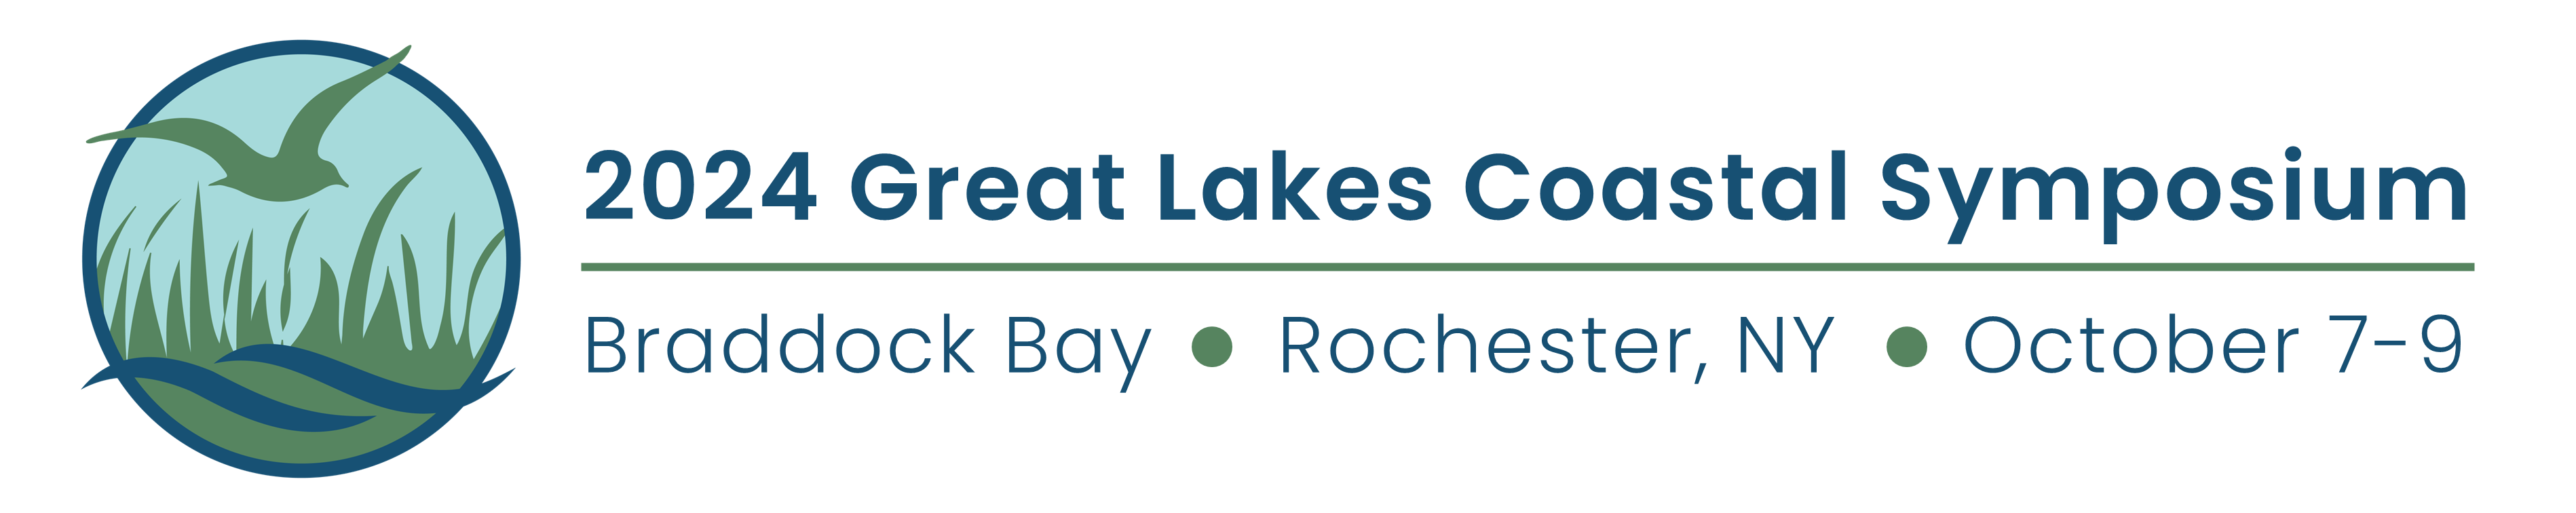 2024 Great Lakes Coastal Symposium, Braddock Bay, Rochester, NY, October 7-9